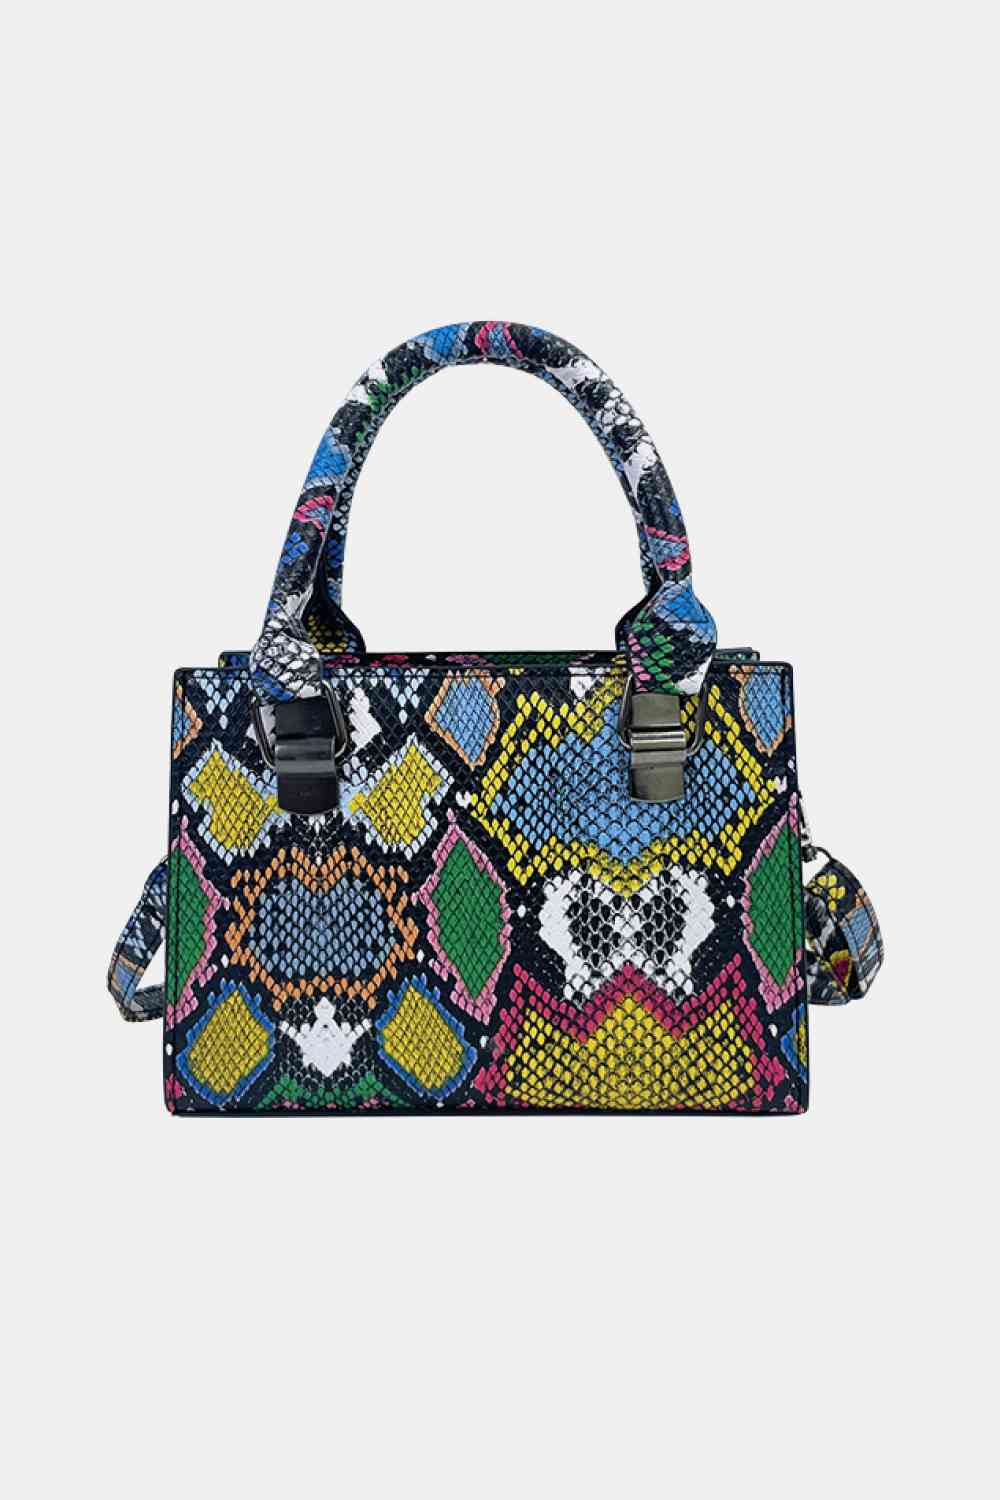 TEEK - Snakeskin Print PU Leather Handbag BAG TEEK Trend Multicolor  